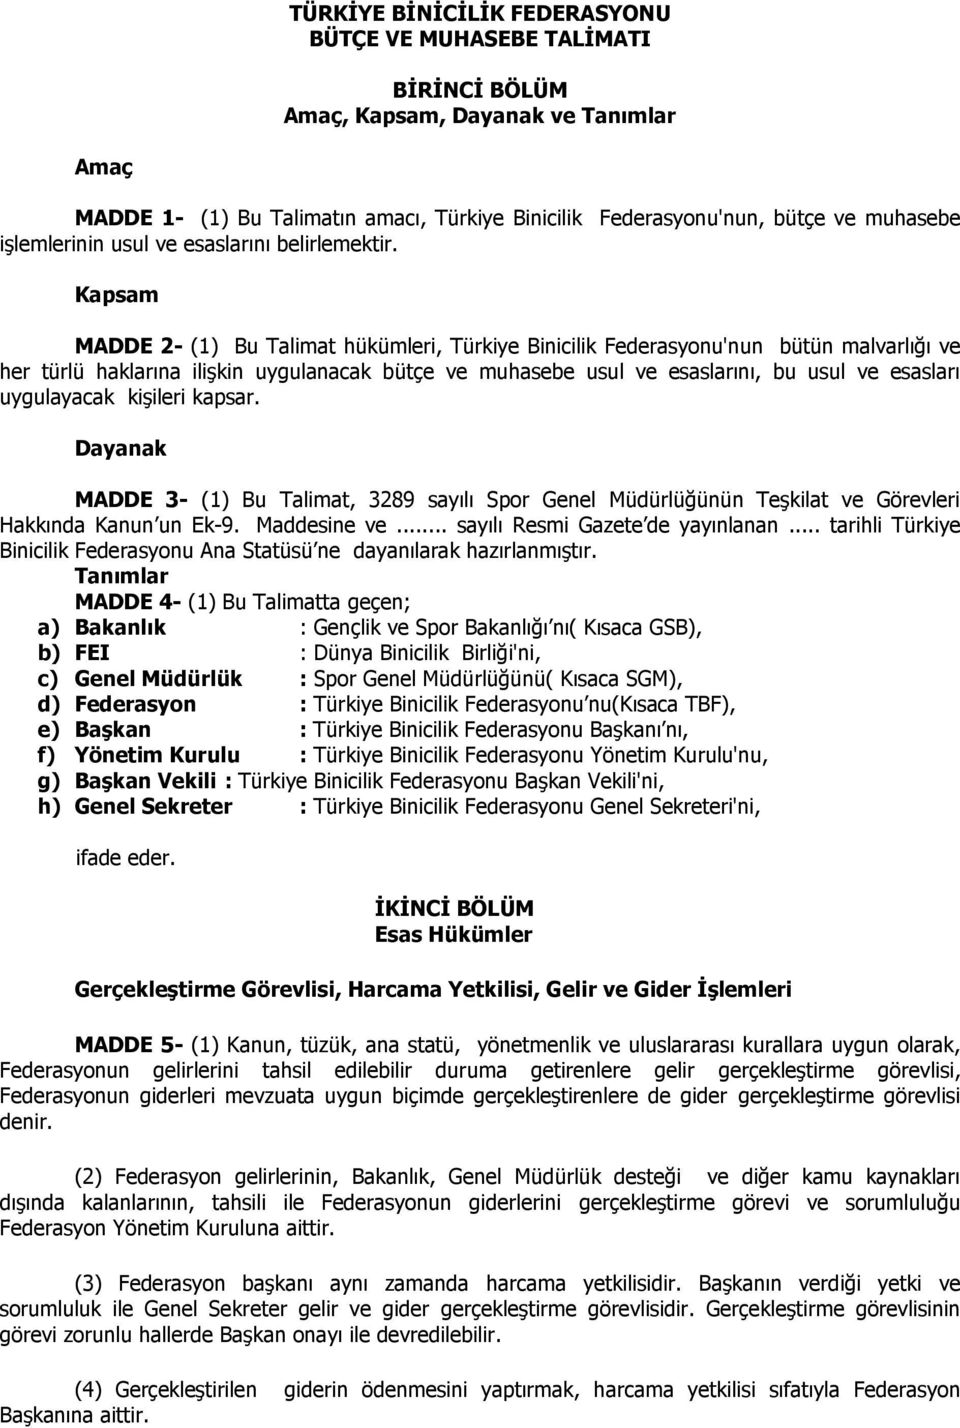 Kapsam MADDE 2- (1) Bu Talimat hükümleri, Türkiye Binicilik Federasyonu'nun bütün malvarlığı ve her türlü haklarına ilişkin uygulanacak bütçe ve muhasebe usul ve esaslarını, bu usul ve esasları